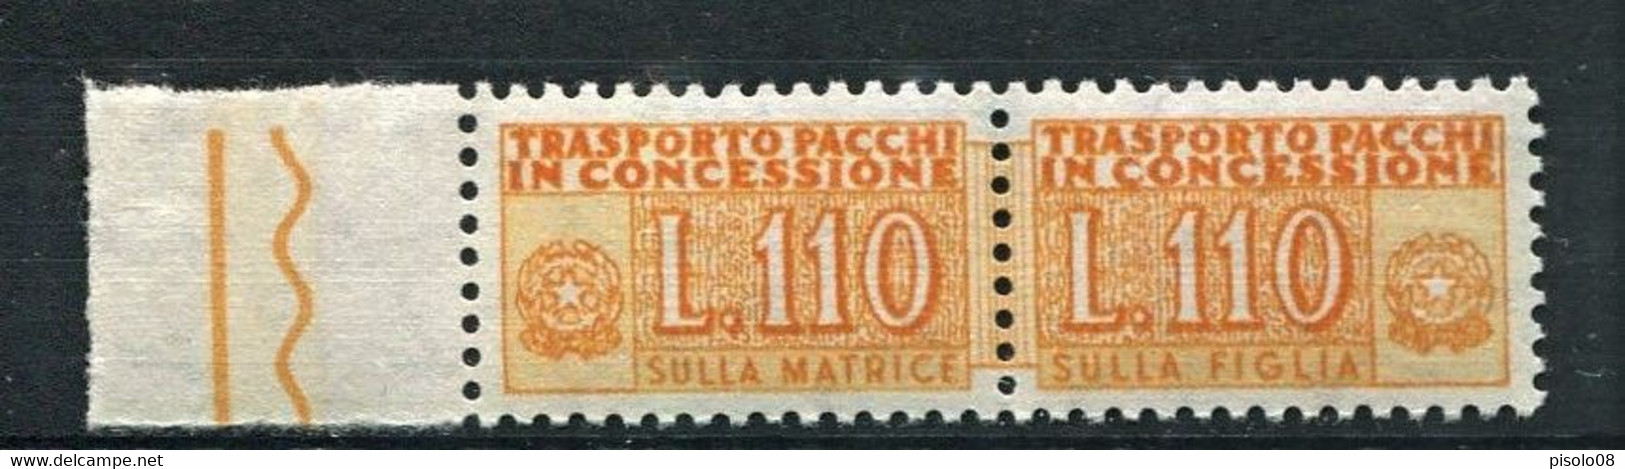 REPUBBLICA 1955 PACCHI IN CONCESSIONE110 LIRE ** MNH - Concessiepaketten